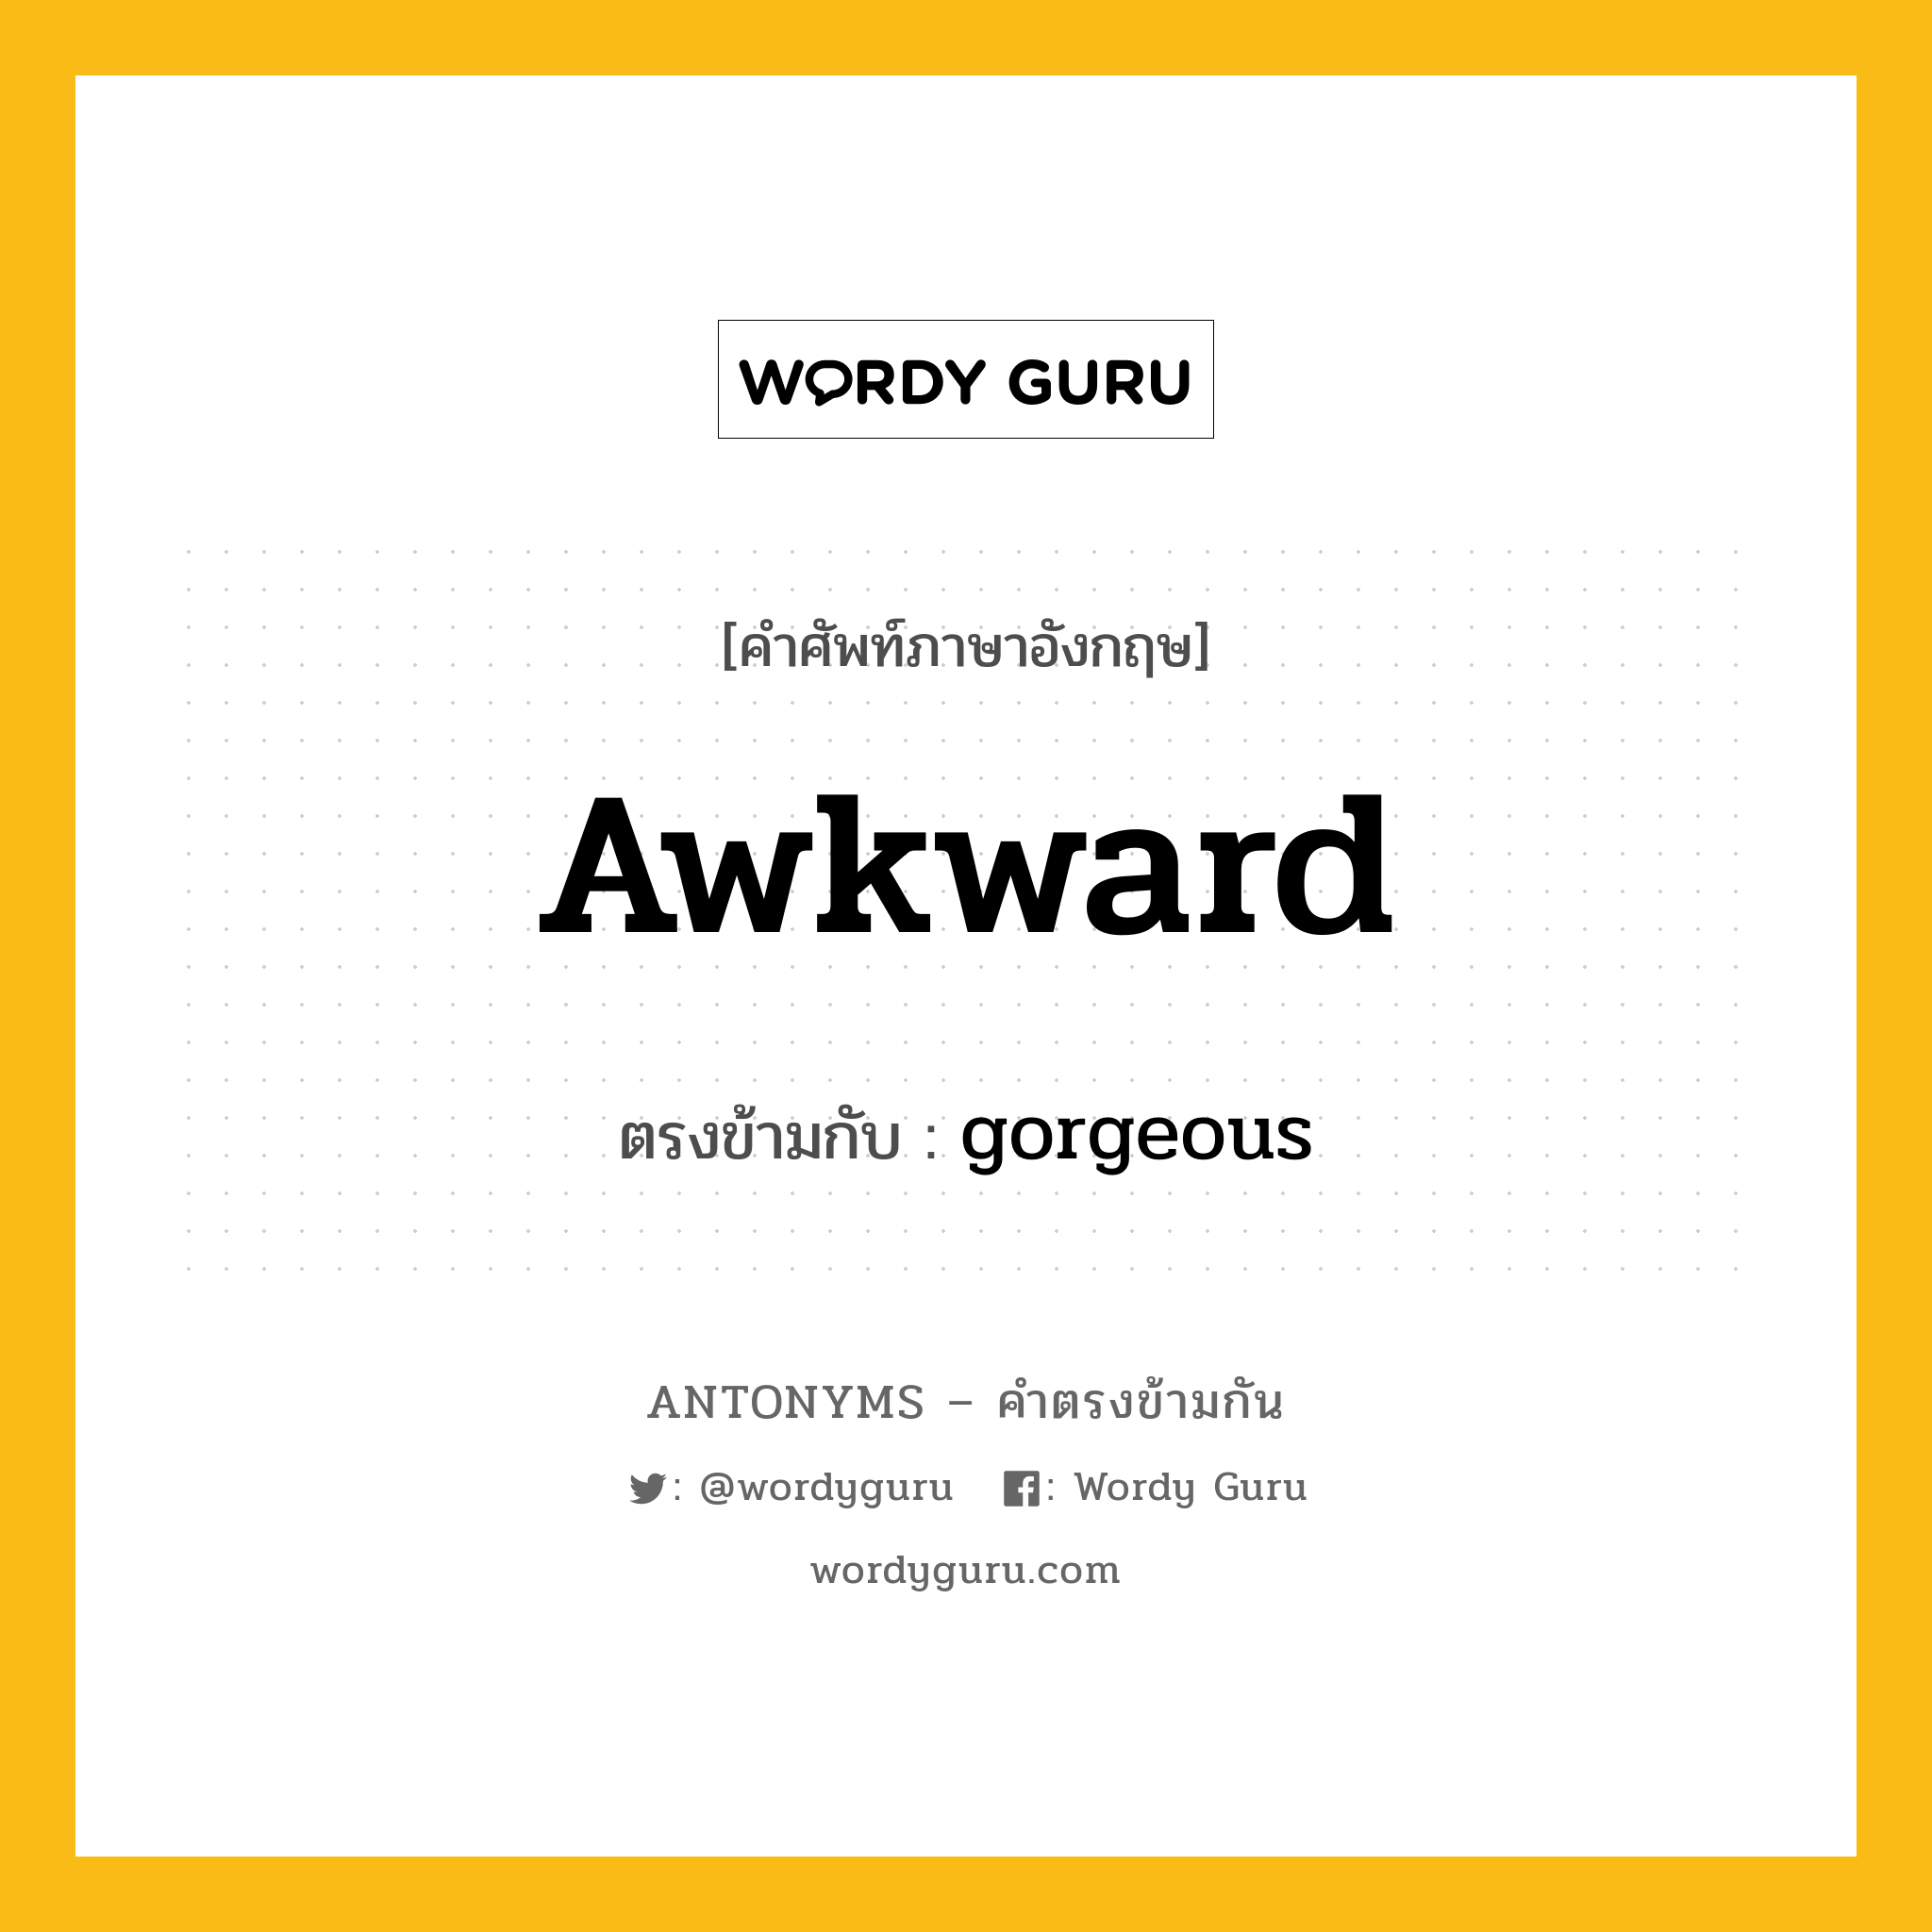 awkward เป็นคำตรงข้ามกับคำไหนบ้าง?, คำศัพท์ภาษาอังกฤษ awkward ตรงข้ามกับ gorgeous หมวด gorgeous